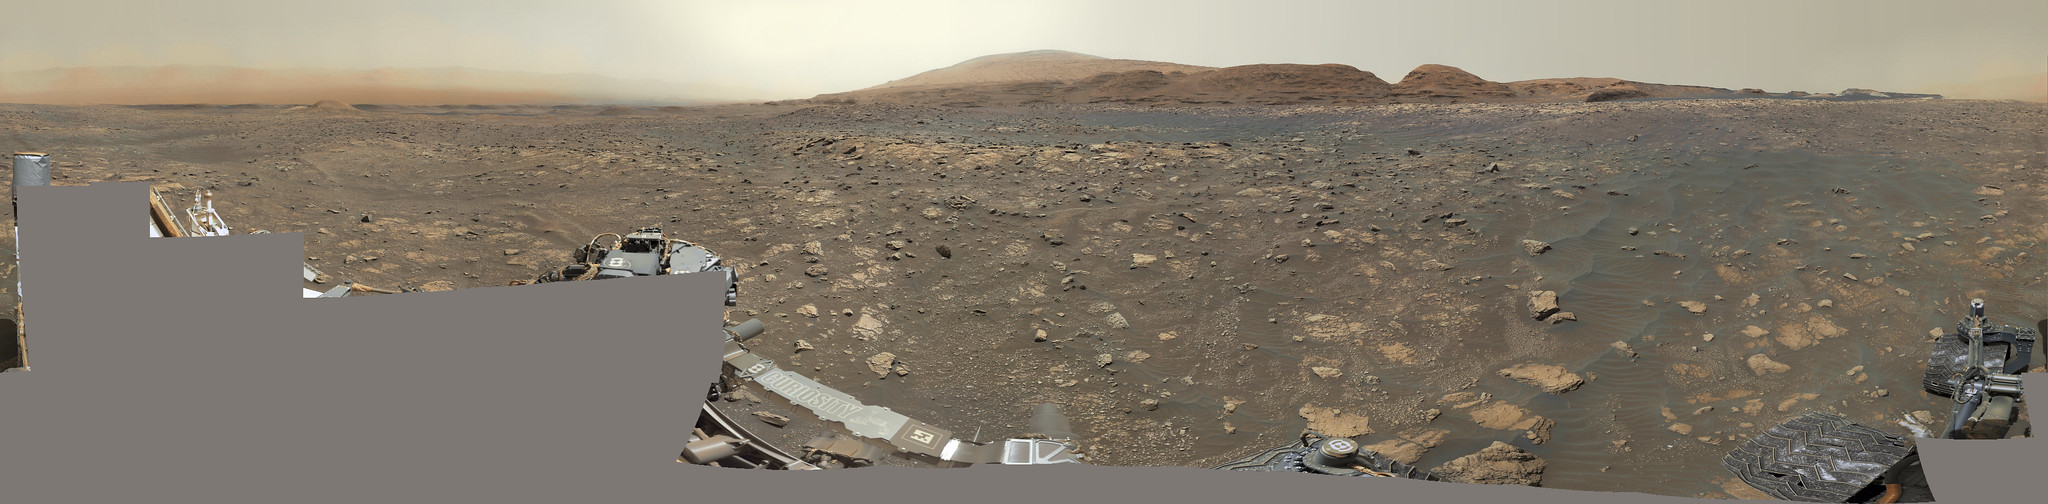 curiosity sol 3010